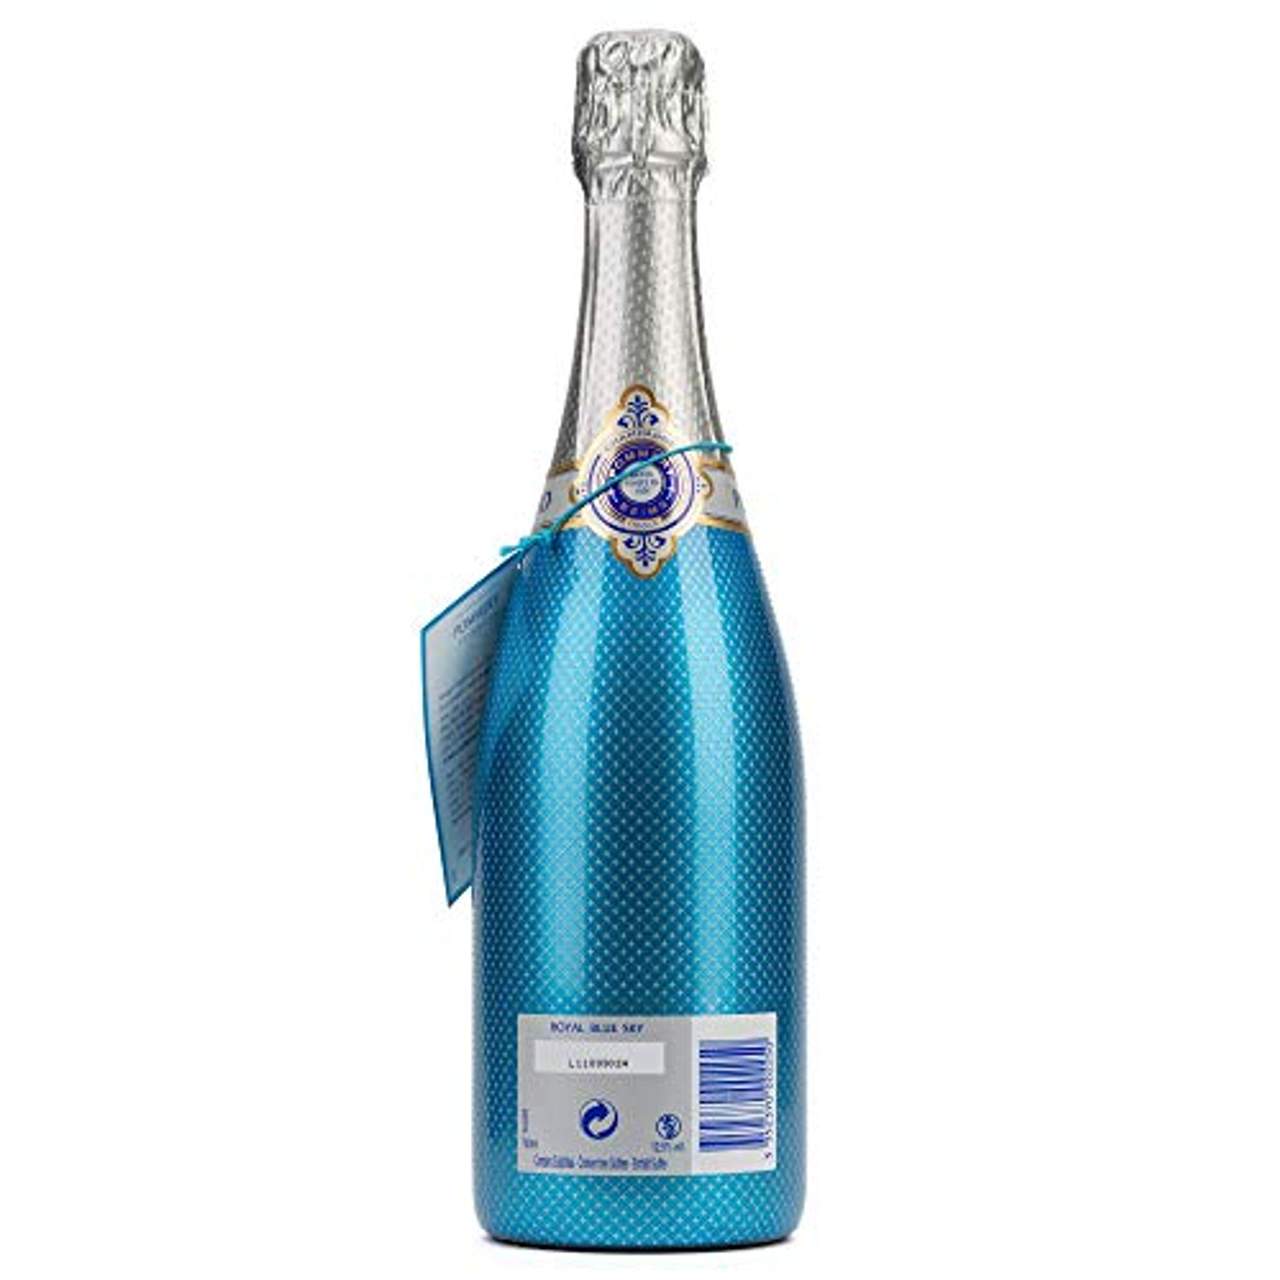 Pommery Royal Blue Sky Champagner